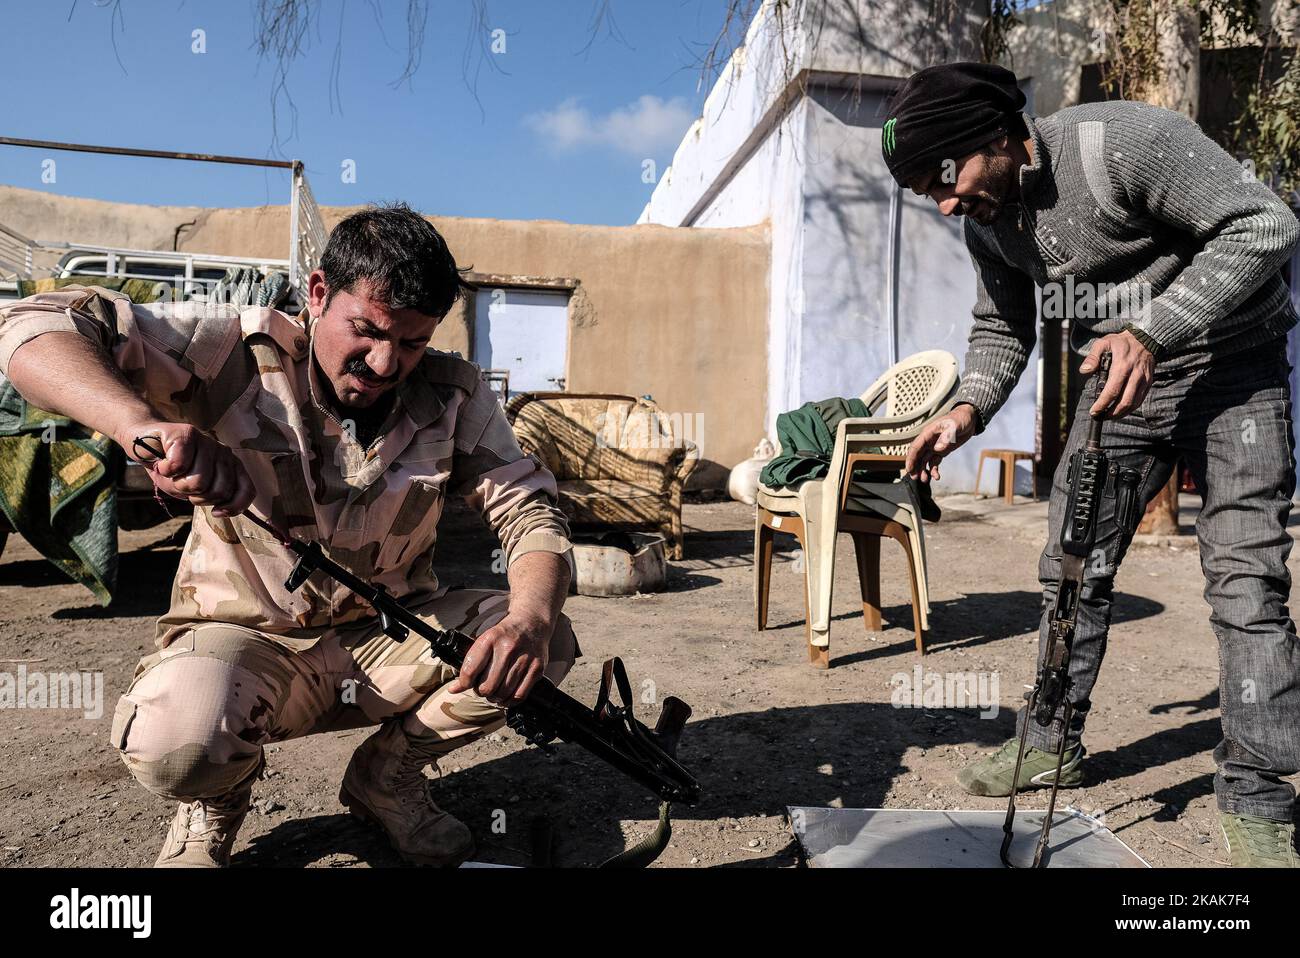 Januar 2017, Wardak, Irak. Peschmerga-Soldaten reinigen ihre Waffe. Die KakaÂ’i-Kurden kehren in ihre Häuser zurück, während die Mosul-Offensive andauern wird. Die KakaÂ’i-Kurden gehören zu mehreren multiethnischen Gruppen, die zu den Yarsan oder Ahl el-Haqq (Volk der Wahrheit) gehören, einer Religion, die Sultan Sahak Ende des 14.. Jahrhunderts im westlichen Iran gegründet hat. Einige Yarsanis im Irak werden KakaÂ’is genannt. Die Kakais gehören zu den religiösen Minderheiten, die in den Provinzen Sulaimaniyah und Halabja, in den Ninive-Ebenen der Provinz Ninive und in den Dörfern südöstlich von Kirk verstreut sind Stockfoto